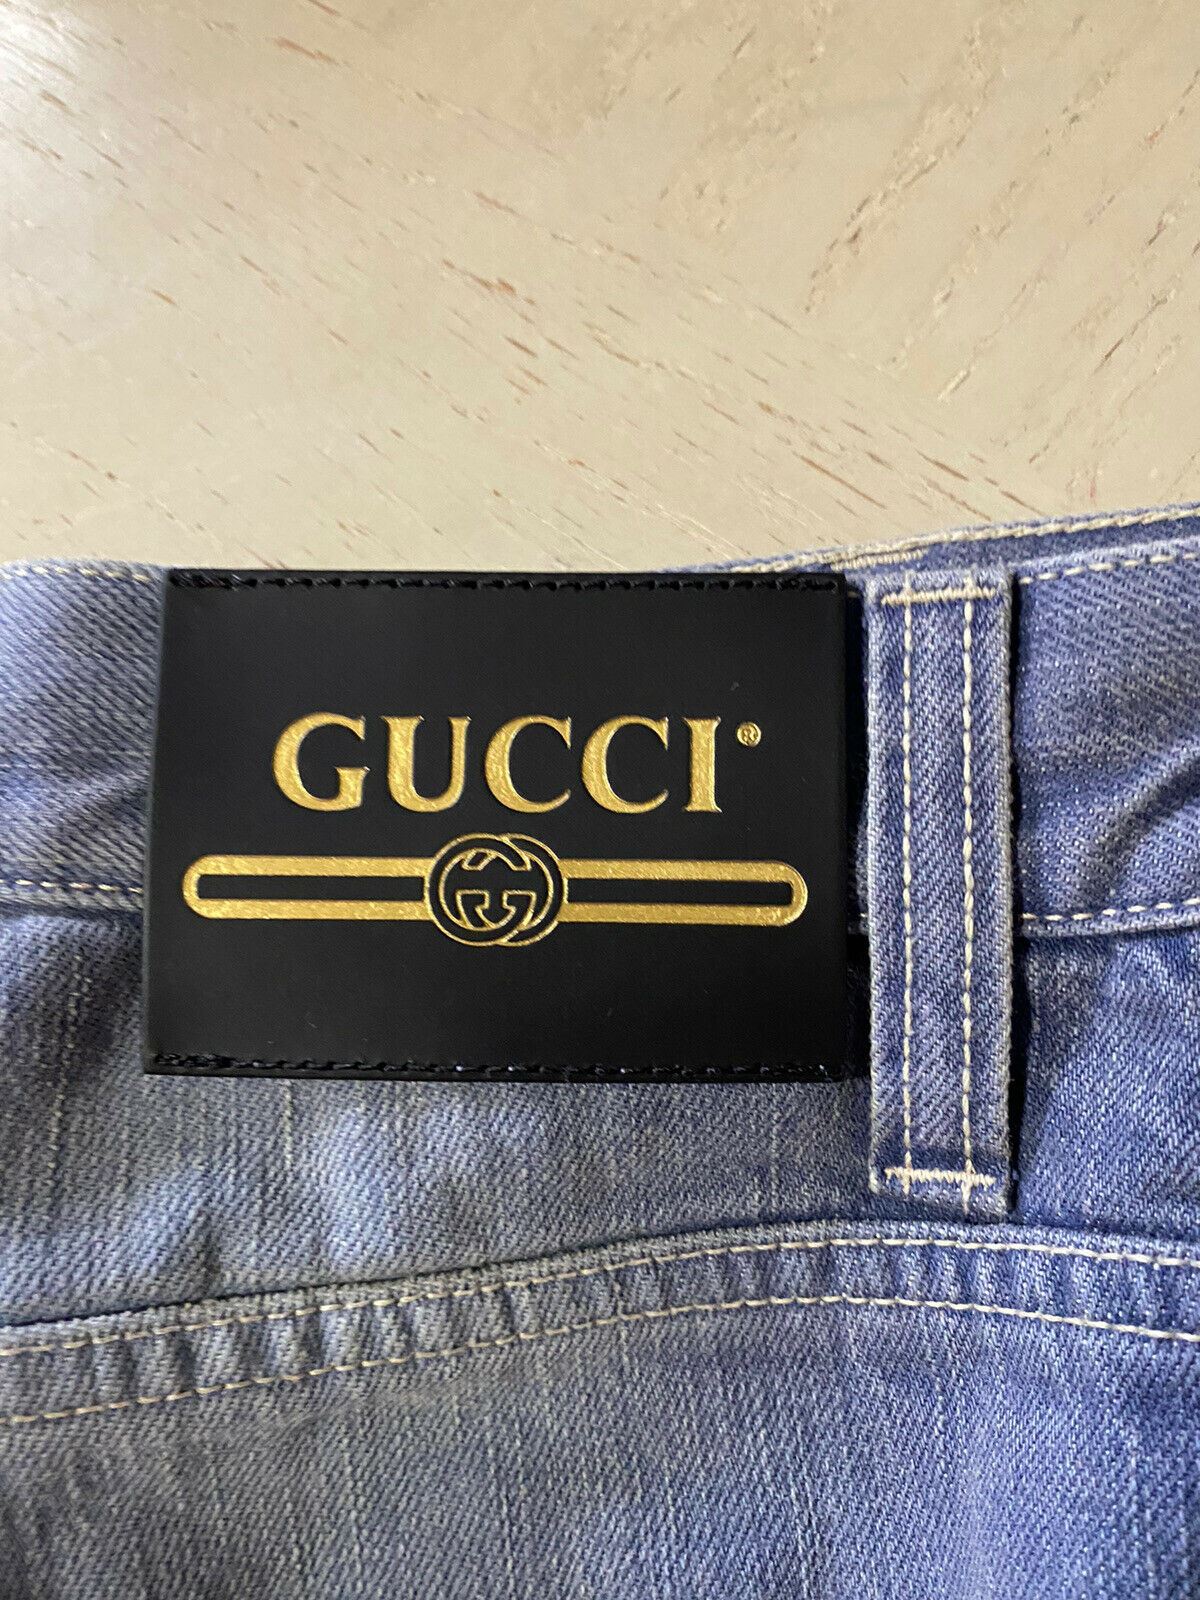 Neu mit Etikett: 1400 $ Gucci Herren-Jeanshose Blau 30 US (46 Euro) Italien